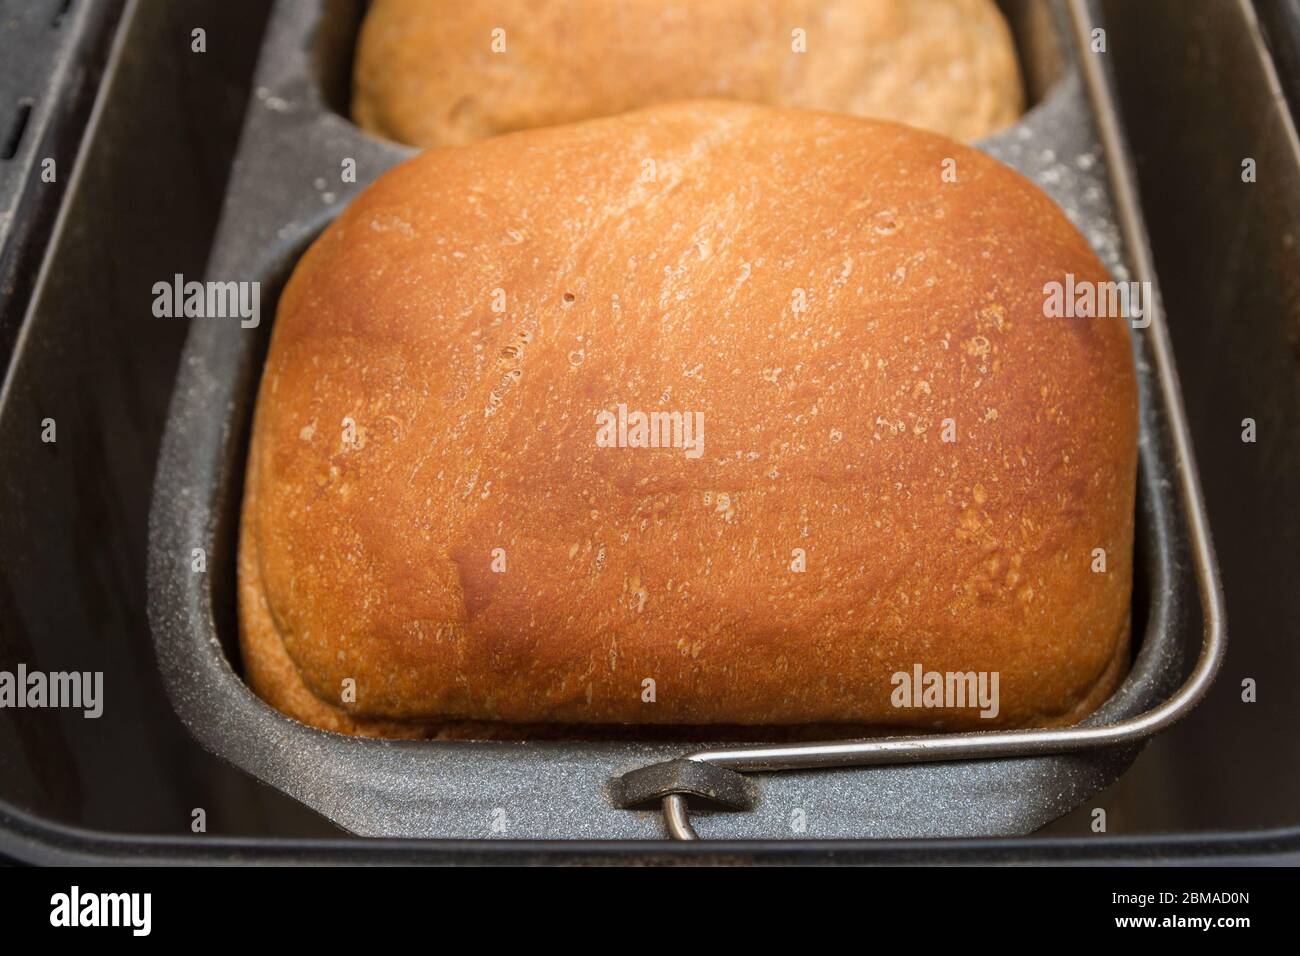 El pan casero se prepara en una panificadora Foto de stock